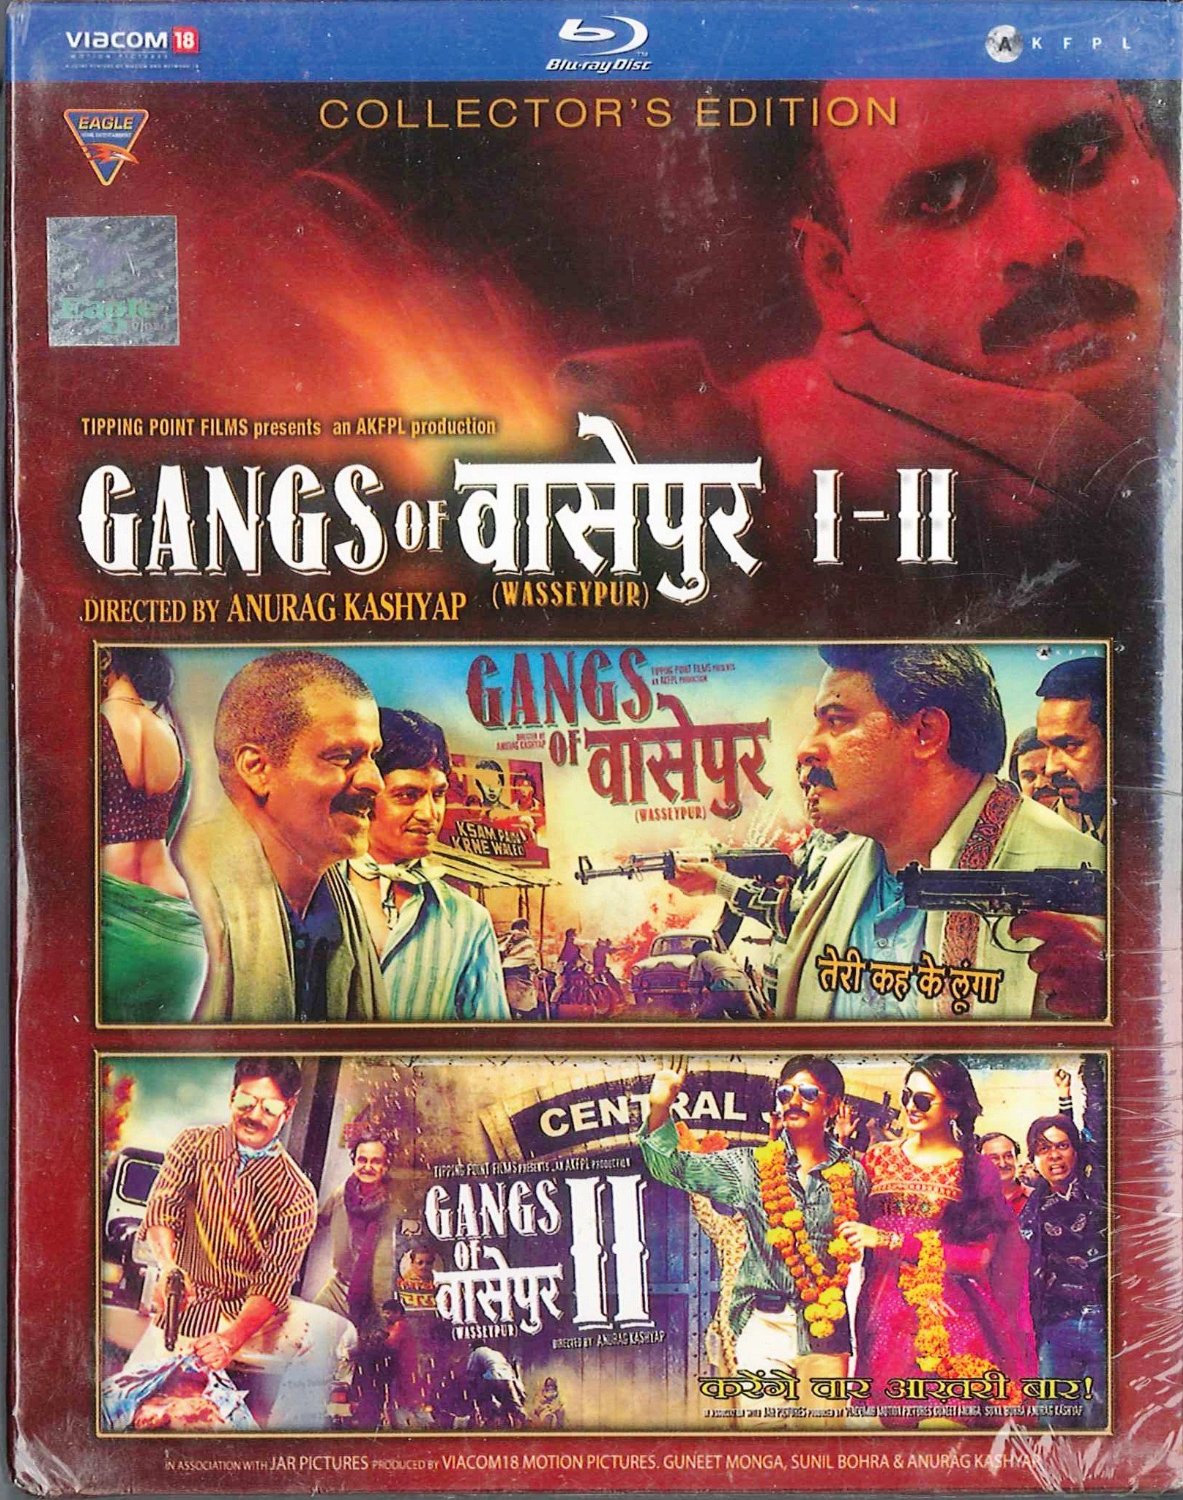 gangs of wasseypur 2 full movie online hd